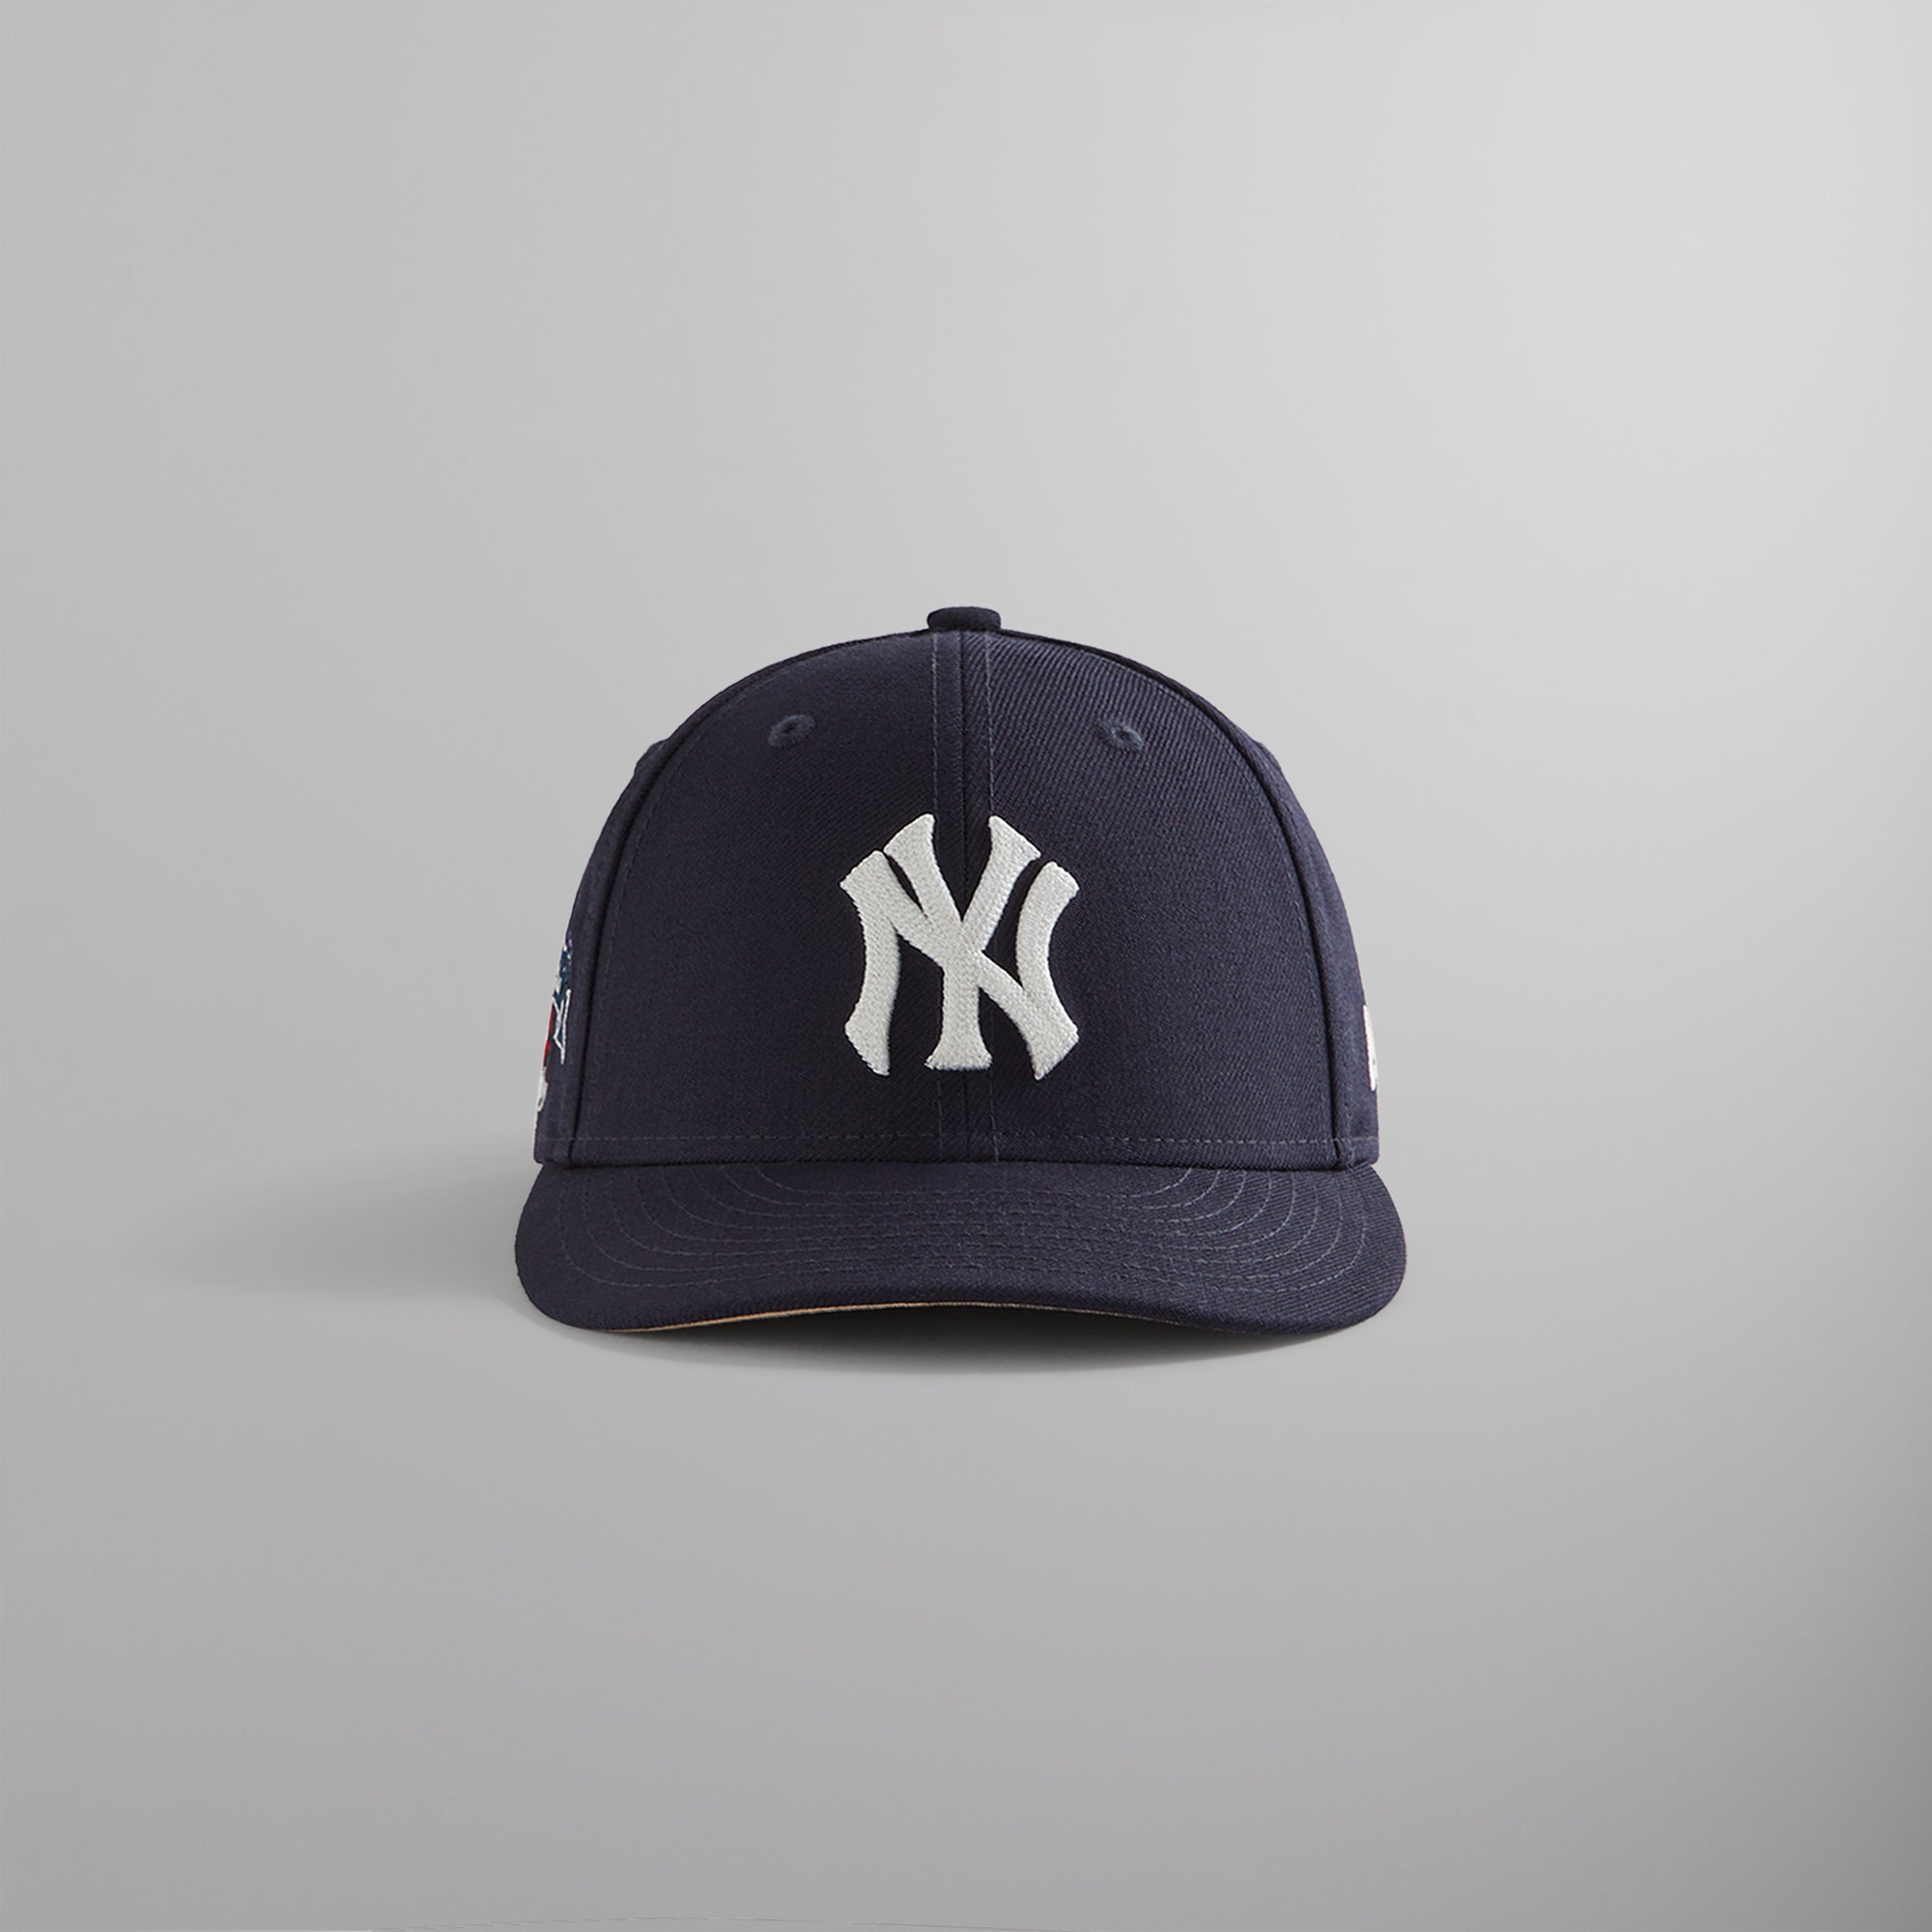 7 1/8 KITH ニューエラヤンキース KITH NEW ERA - 帽子